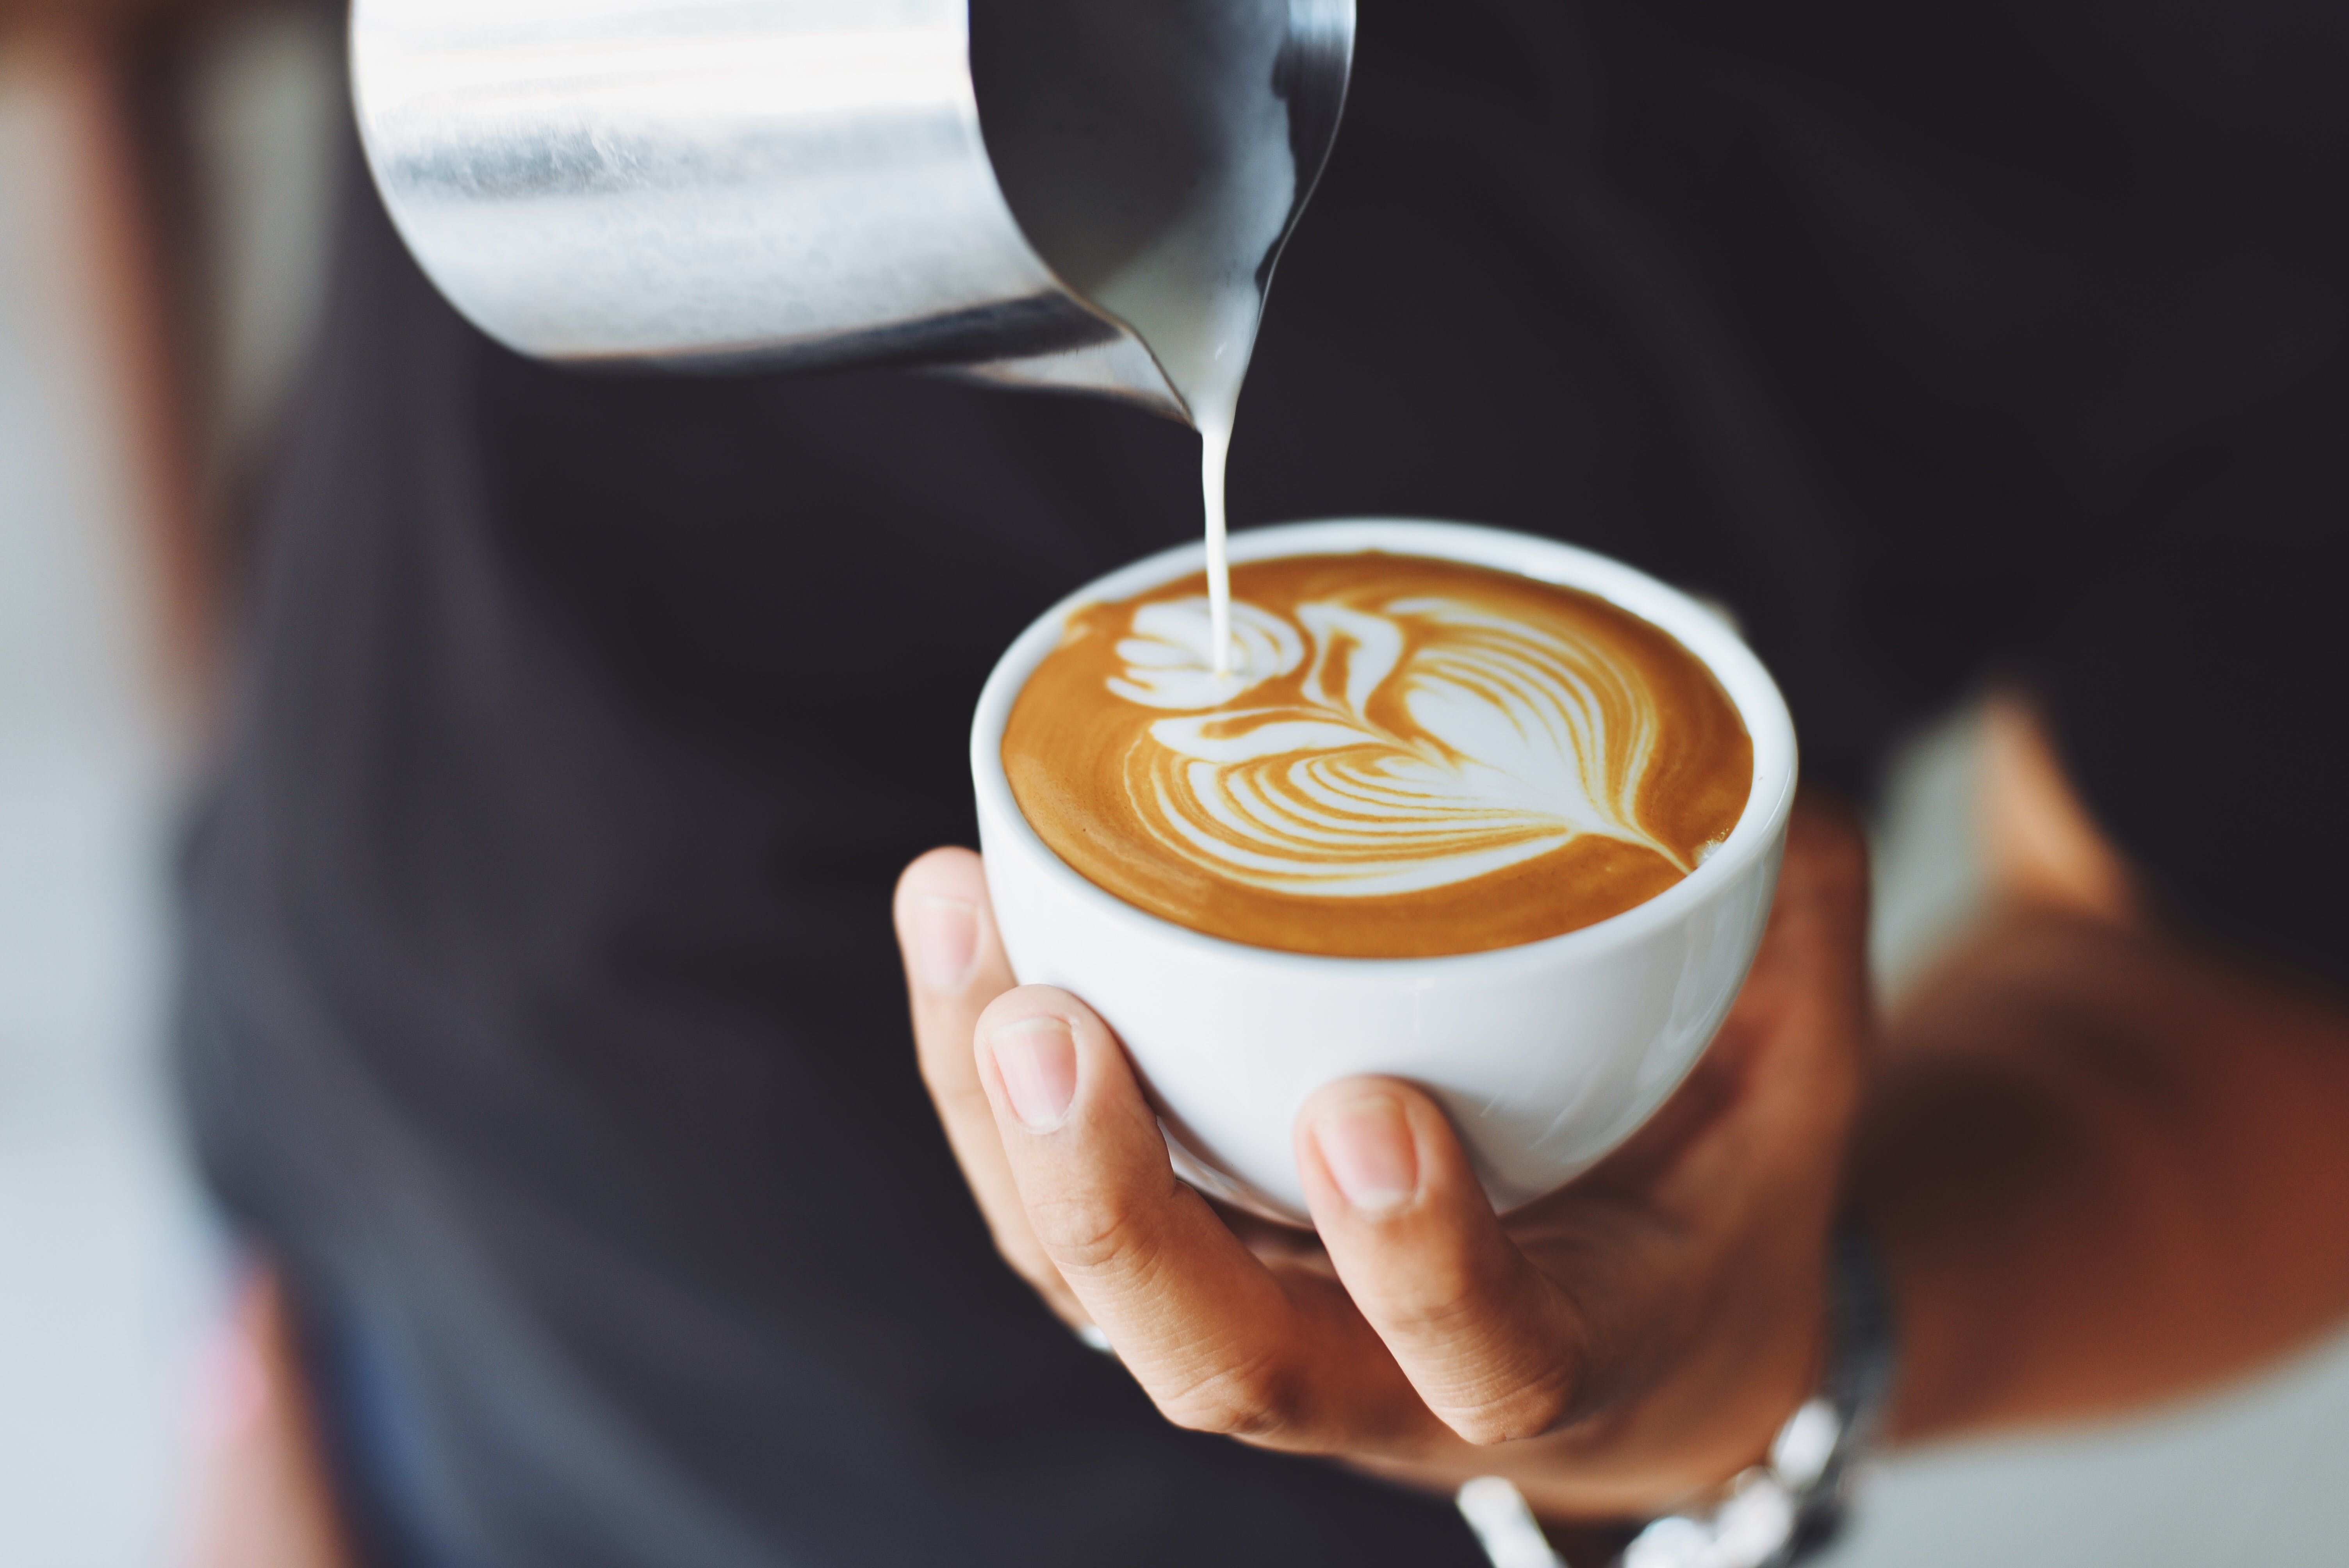 Une personne tenant une tasse de café au lait. | Source : Pexels